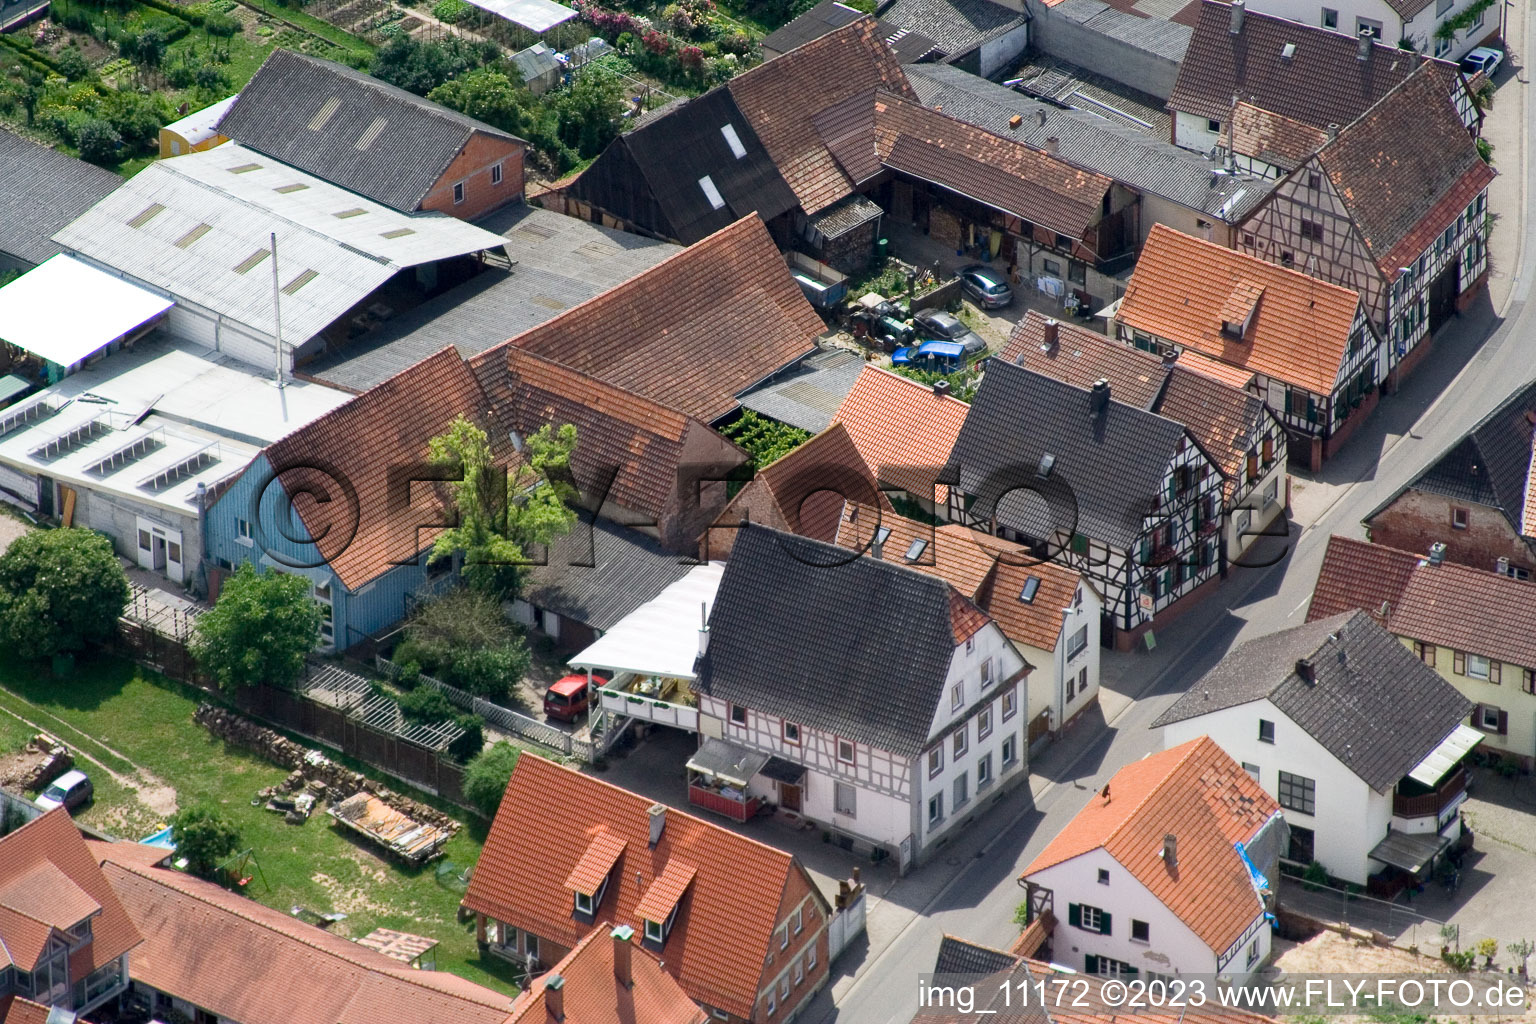 Drohnenbild von Winden im Bundesland Rheinland-Pfalz, Deutschland